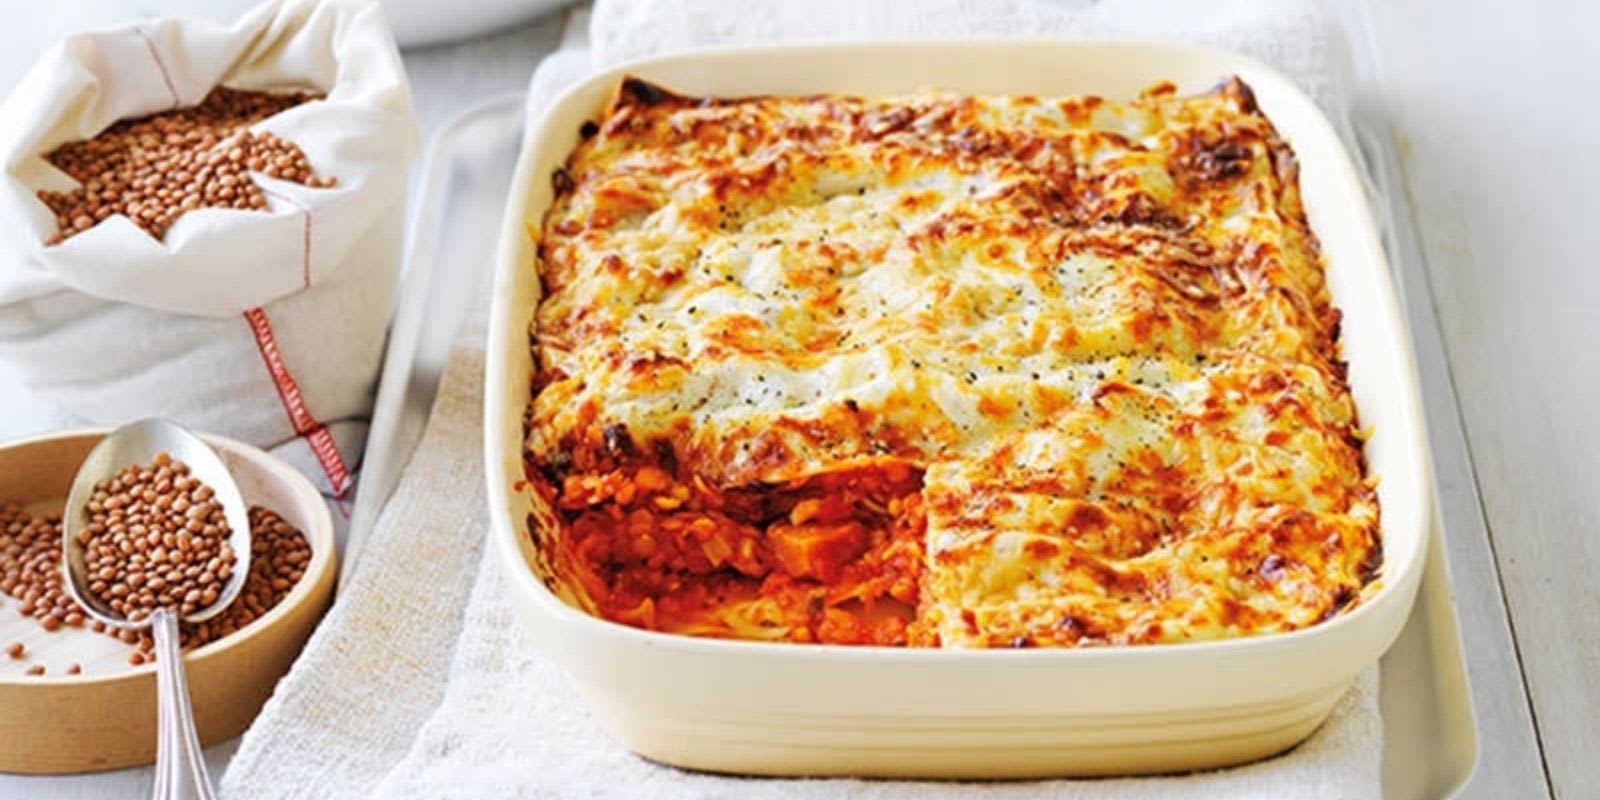 Lust auf Lasagne ohne Fleisch? Diese 13 Rezepte für vegetarische Lasagne enthalten Gemüse wie Zucchini, Kürbis oder Linsen statt Hackfleisch. | Kürbis-Lasagne in einer Auflaufform